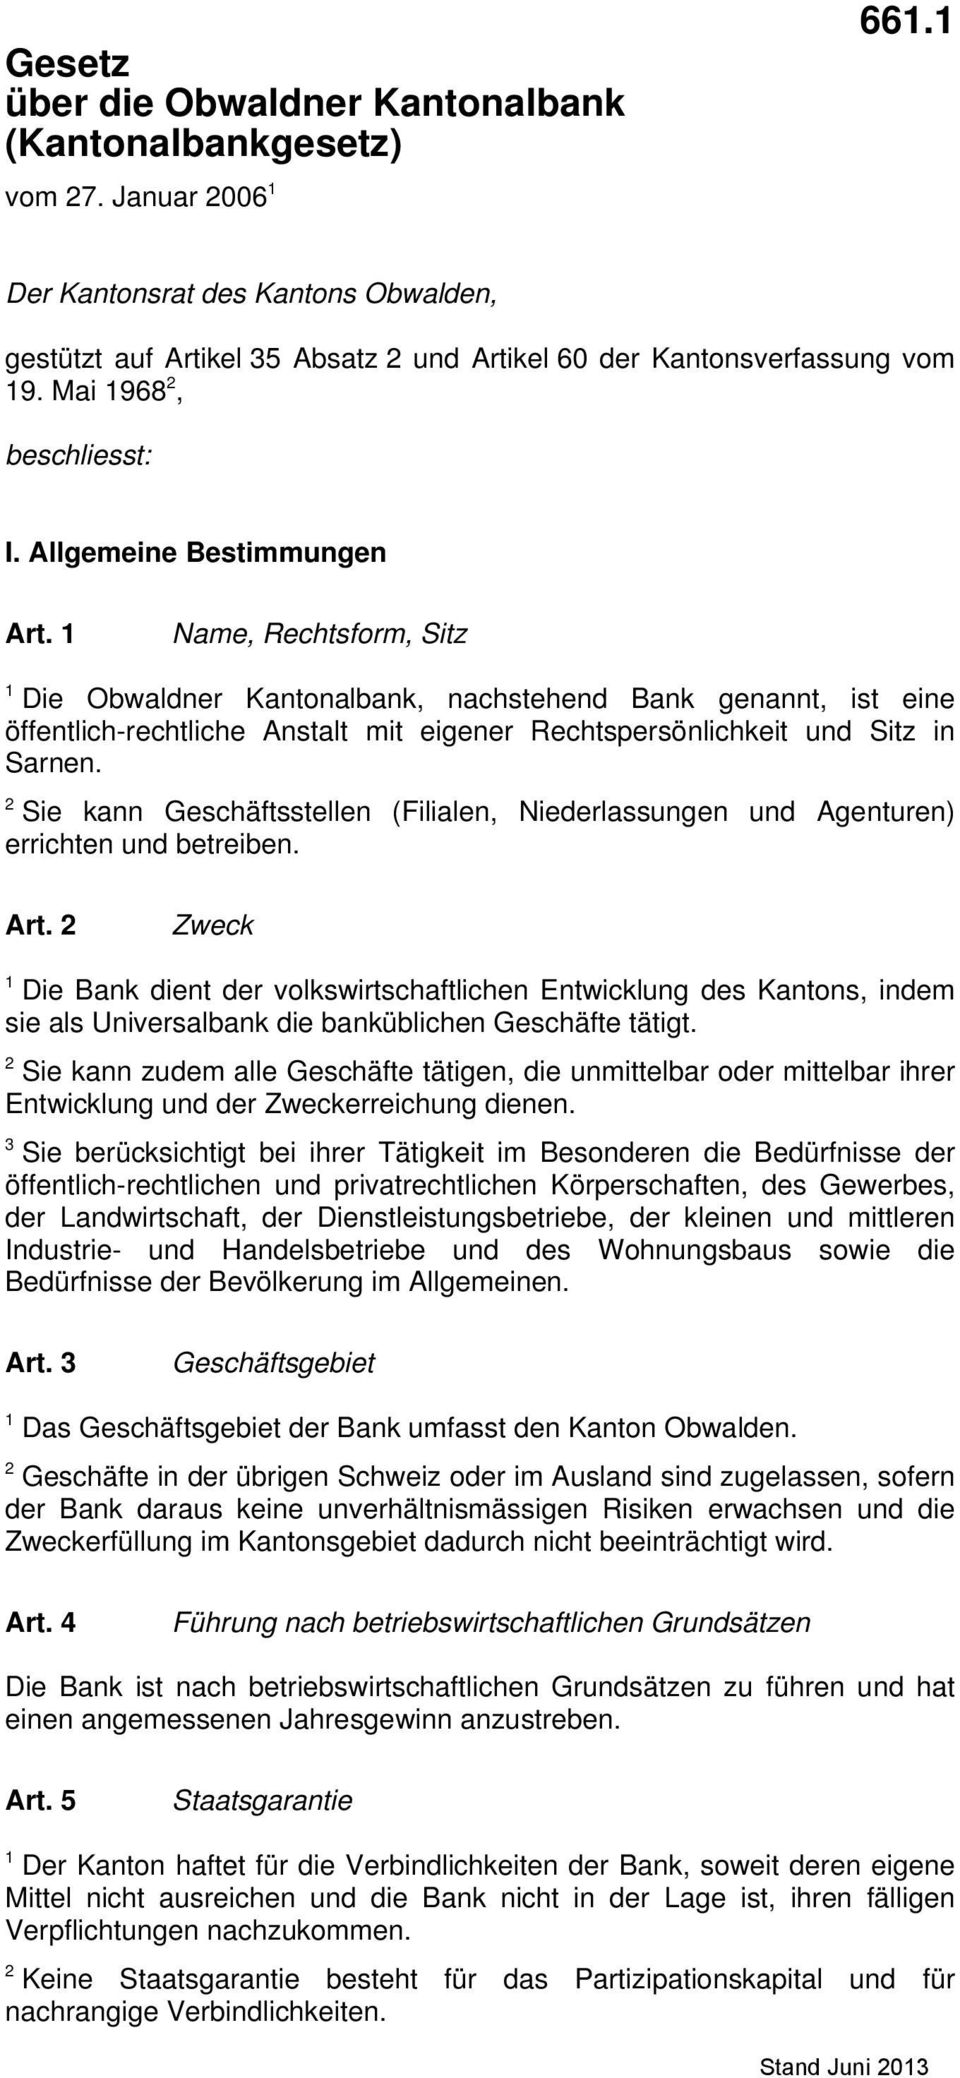 1 Name, Rechtsform, Sitz 1 Die Obwaldner Kantonalbank, nachstehend Bank genannt, ist eine öffentlich-rechtliche Anstalt mit eigener Rechtspersönlichkeit und Sitz in Sarnen.